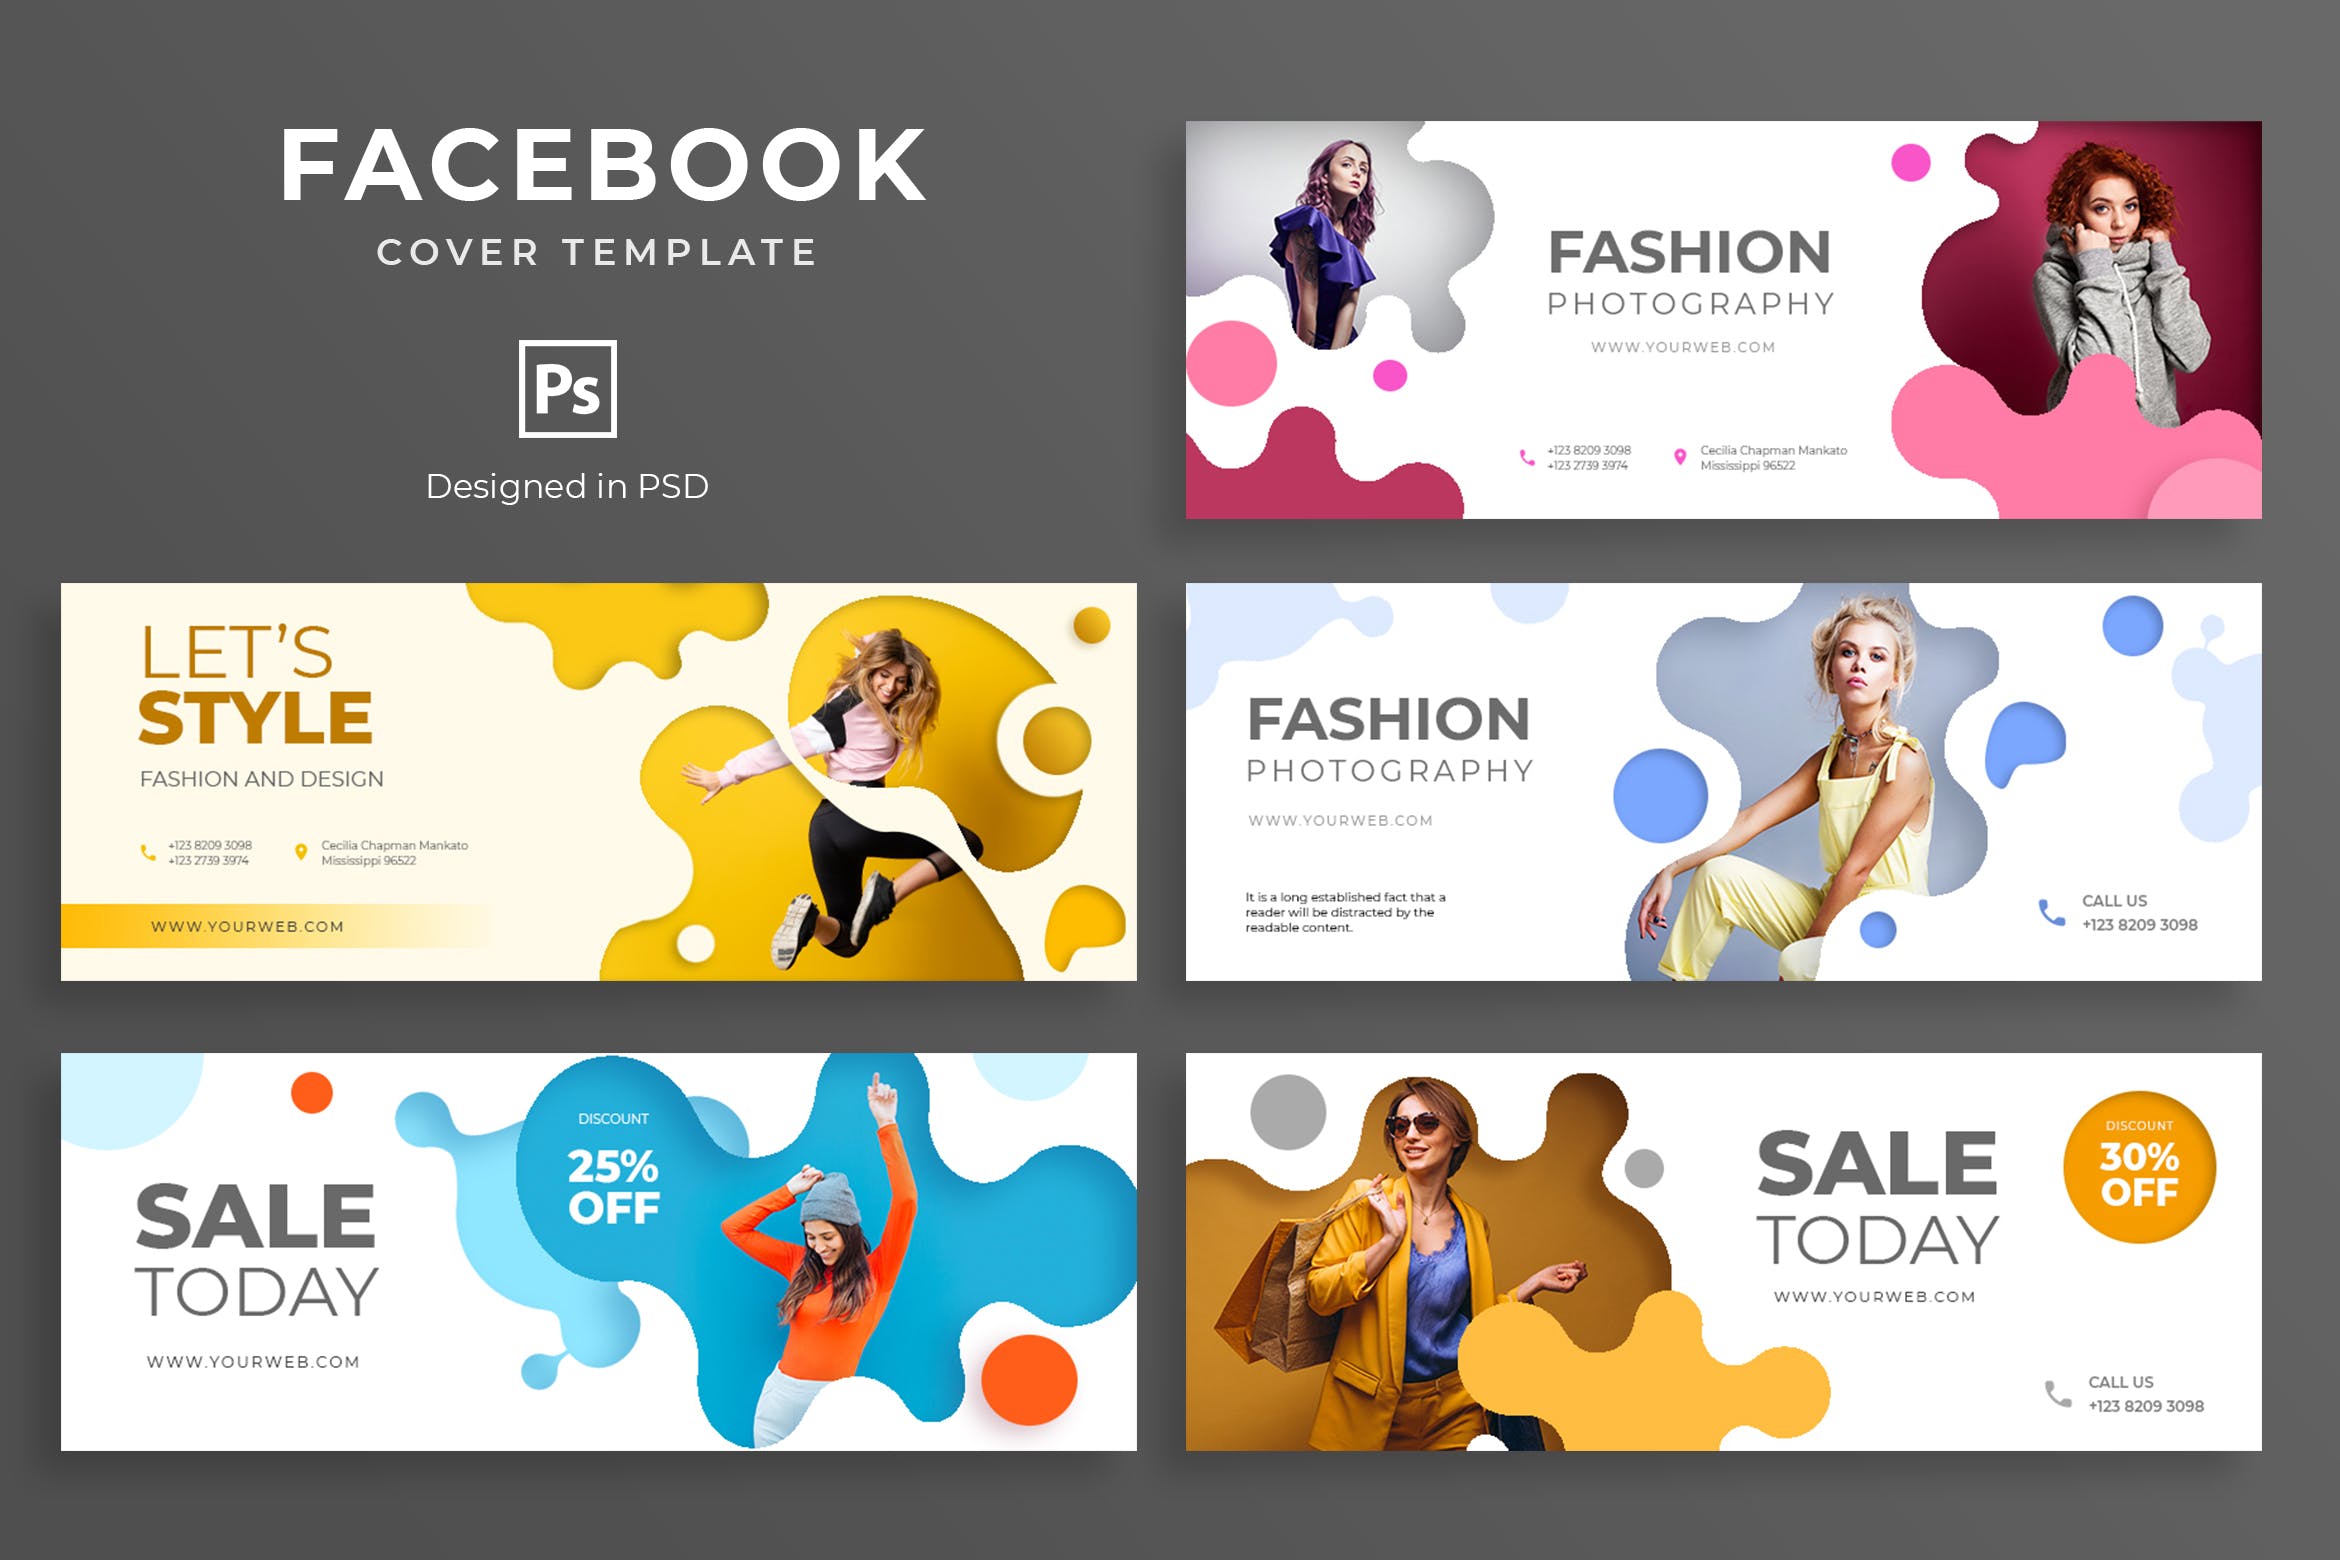 时尚品牌促销Facebook营销社交封面设计模板 Fashion Promo Facebook Cover Template插图